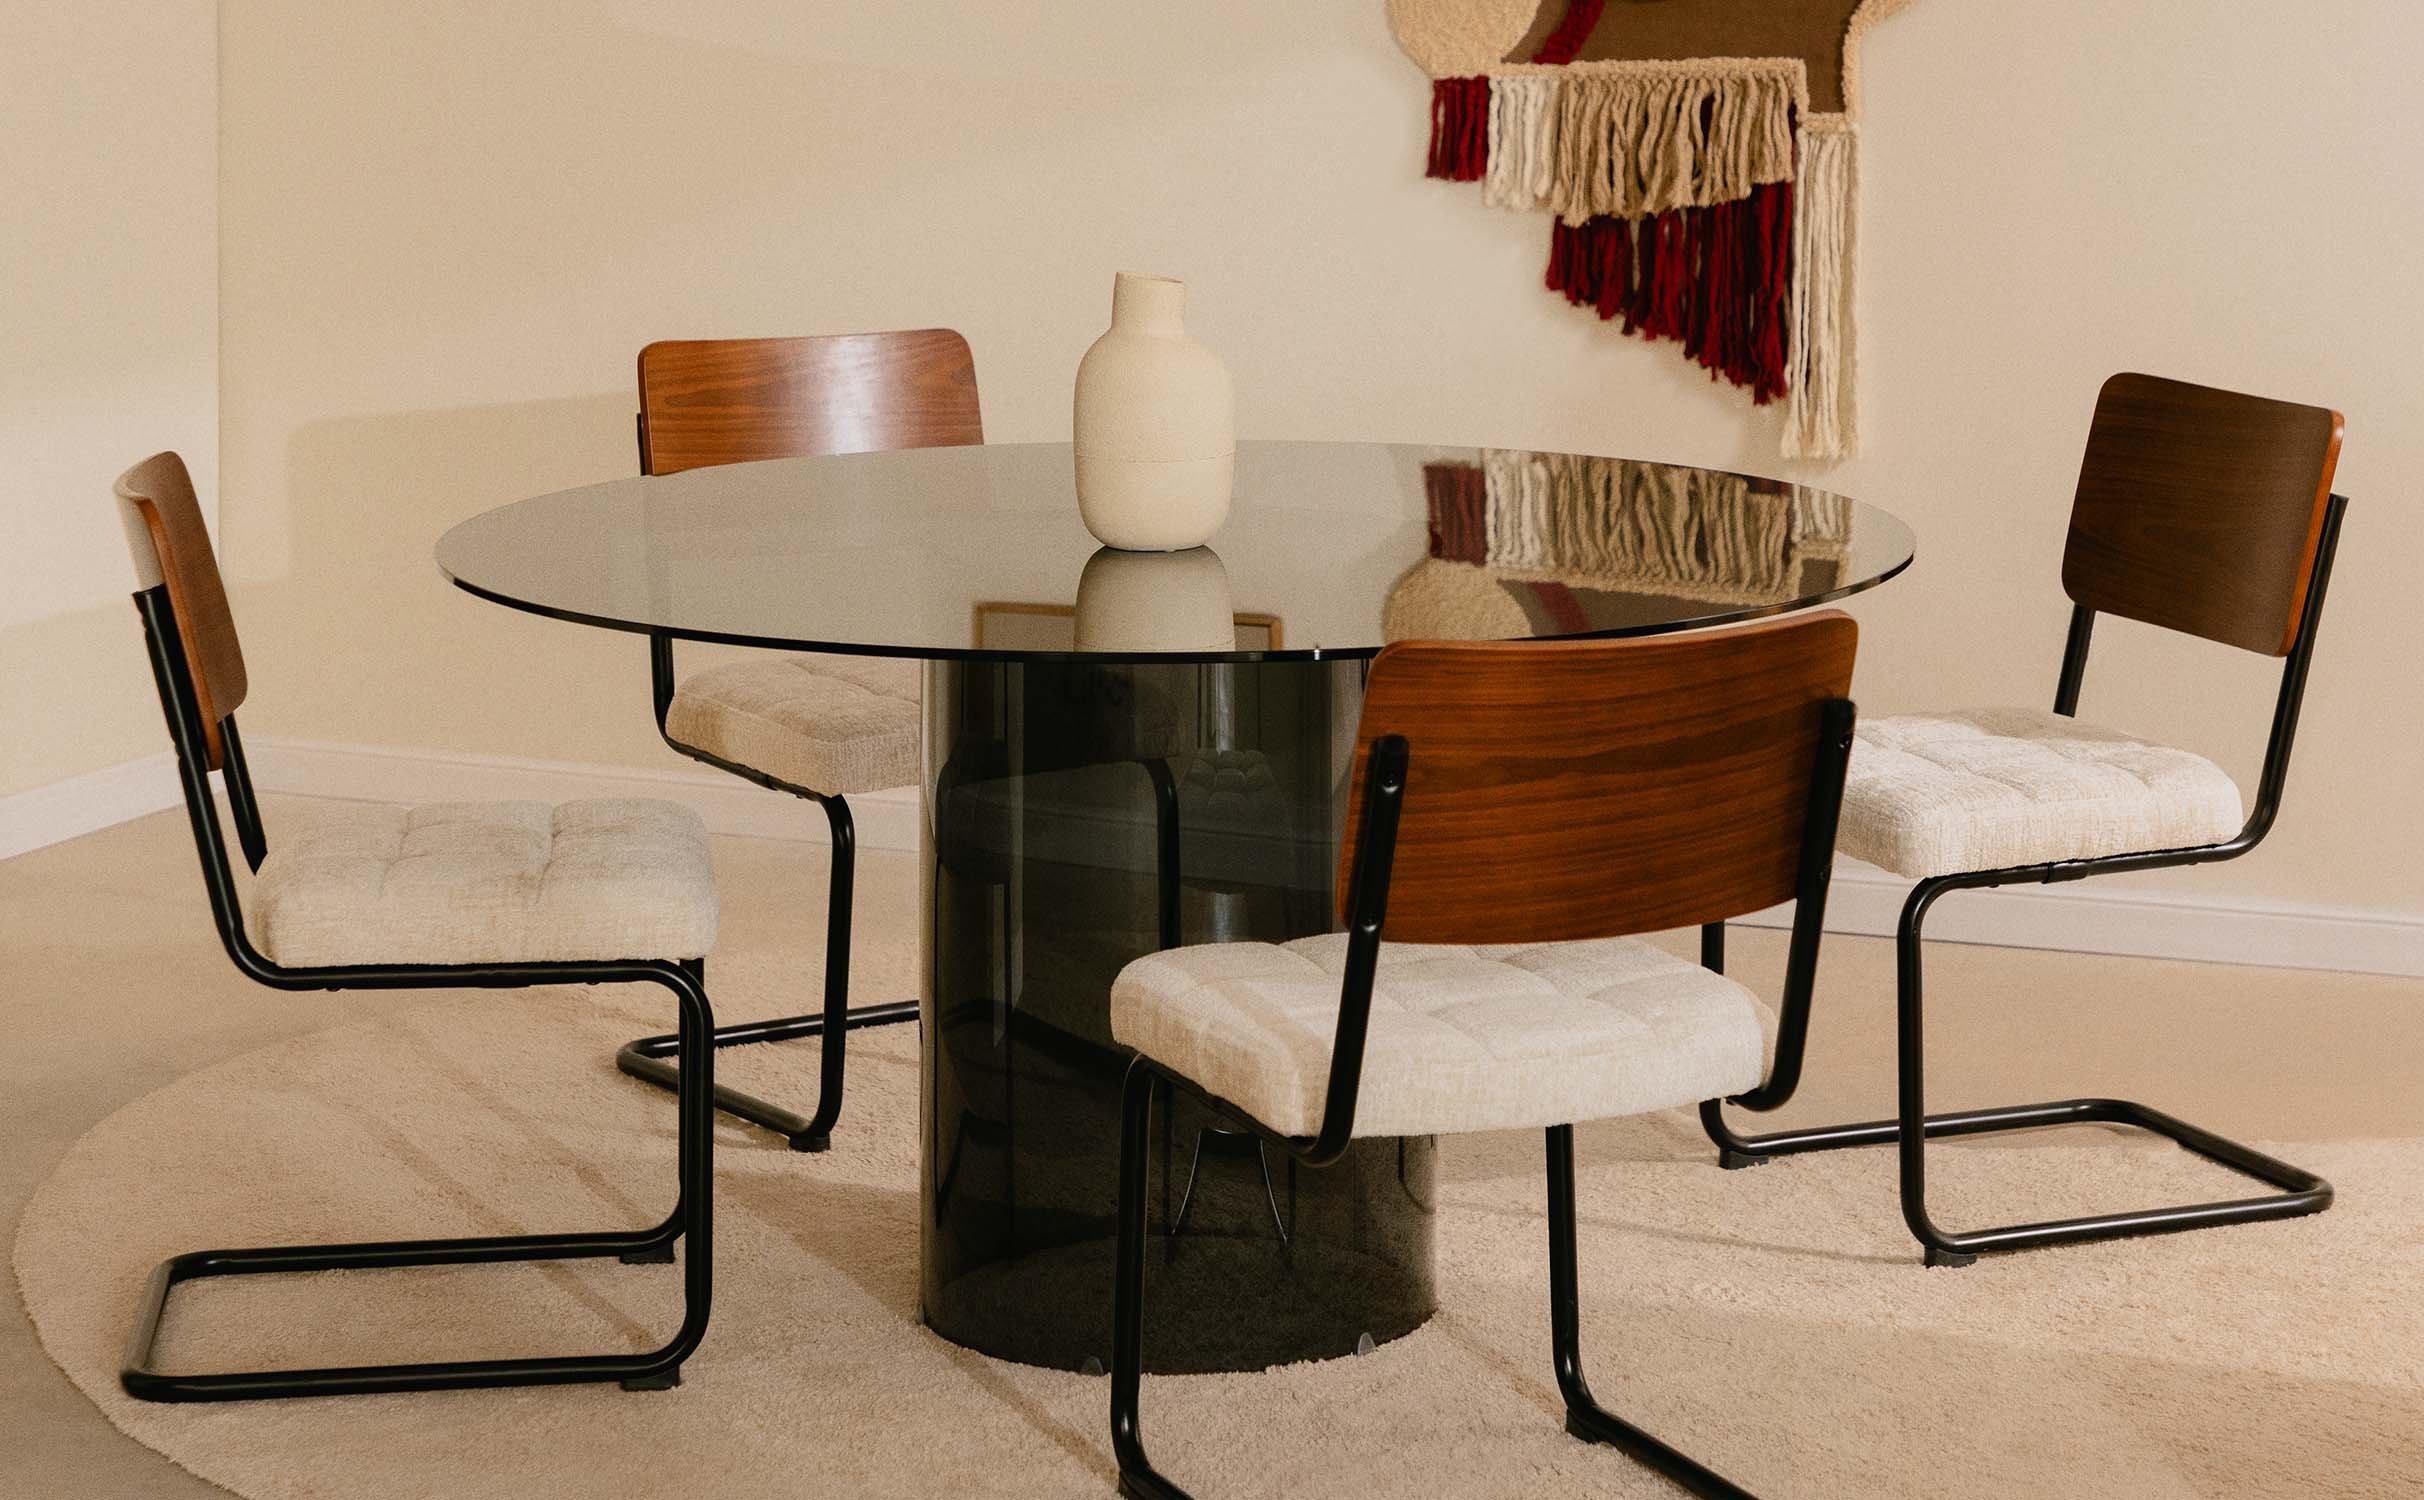  Rundes Esstisch-Set aus Gehärtetem Glas Kolu und 4 Stühle aus Holz und Stoff Cuba, Galeriebild 1